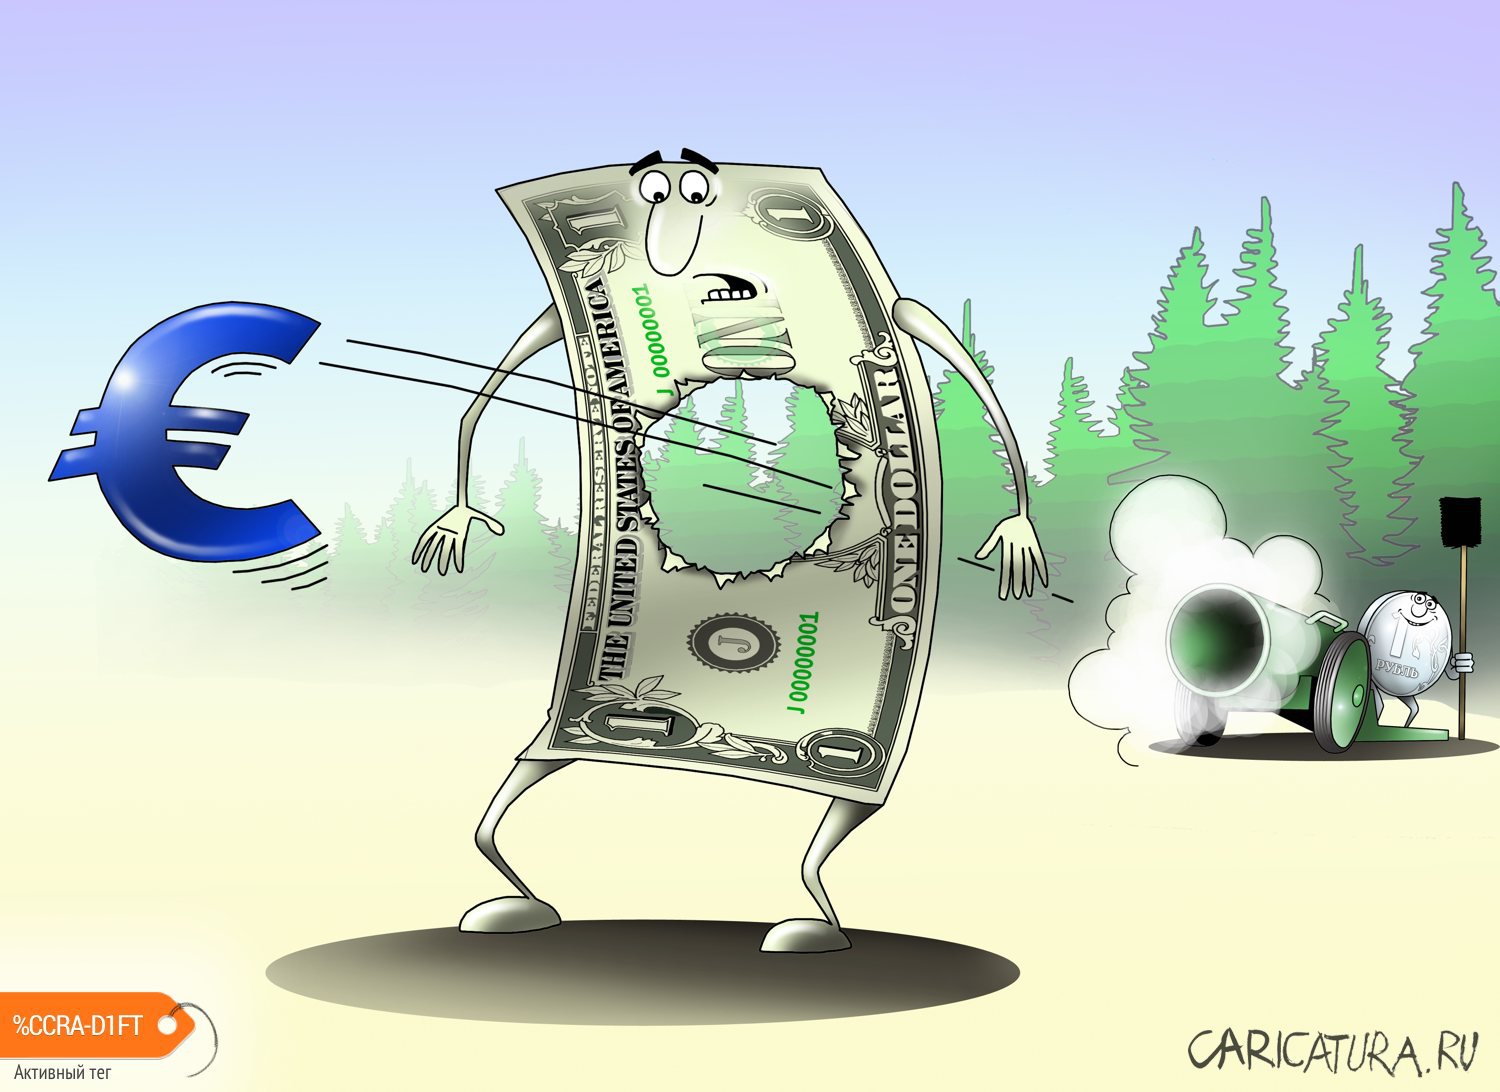 Карикатура "Из пушки по доллару", Сергей Корсун